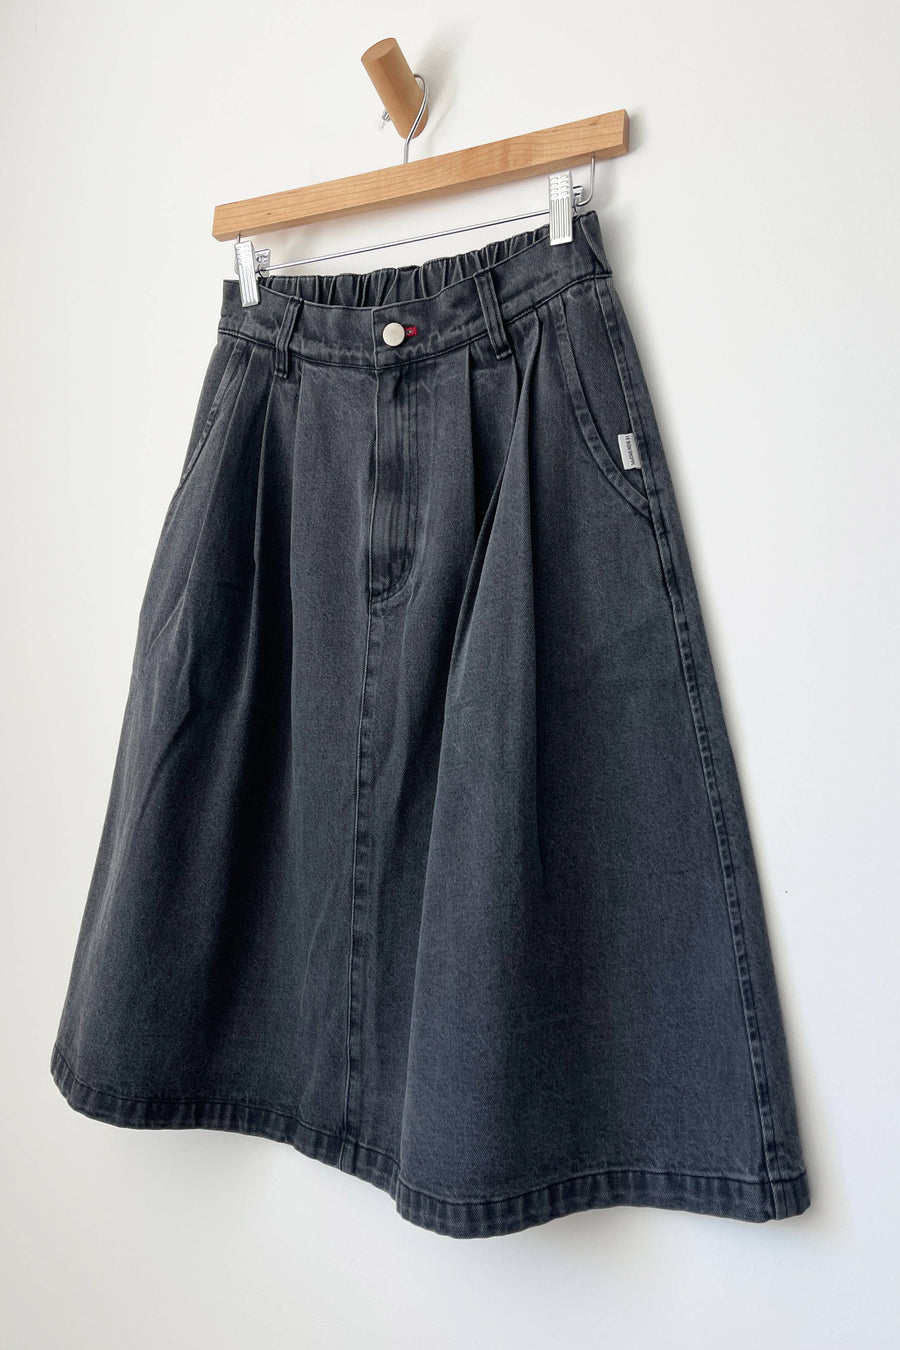 Farm Girl Skirt (Black Denim)